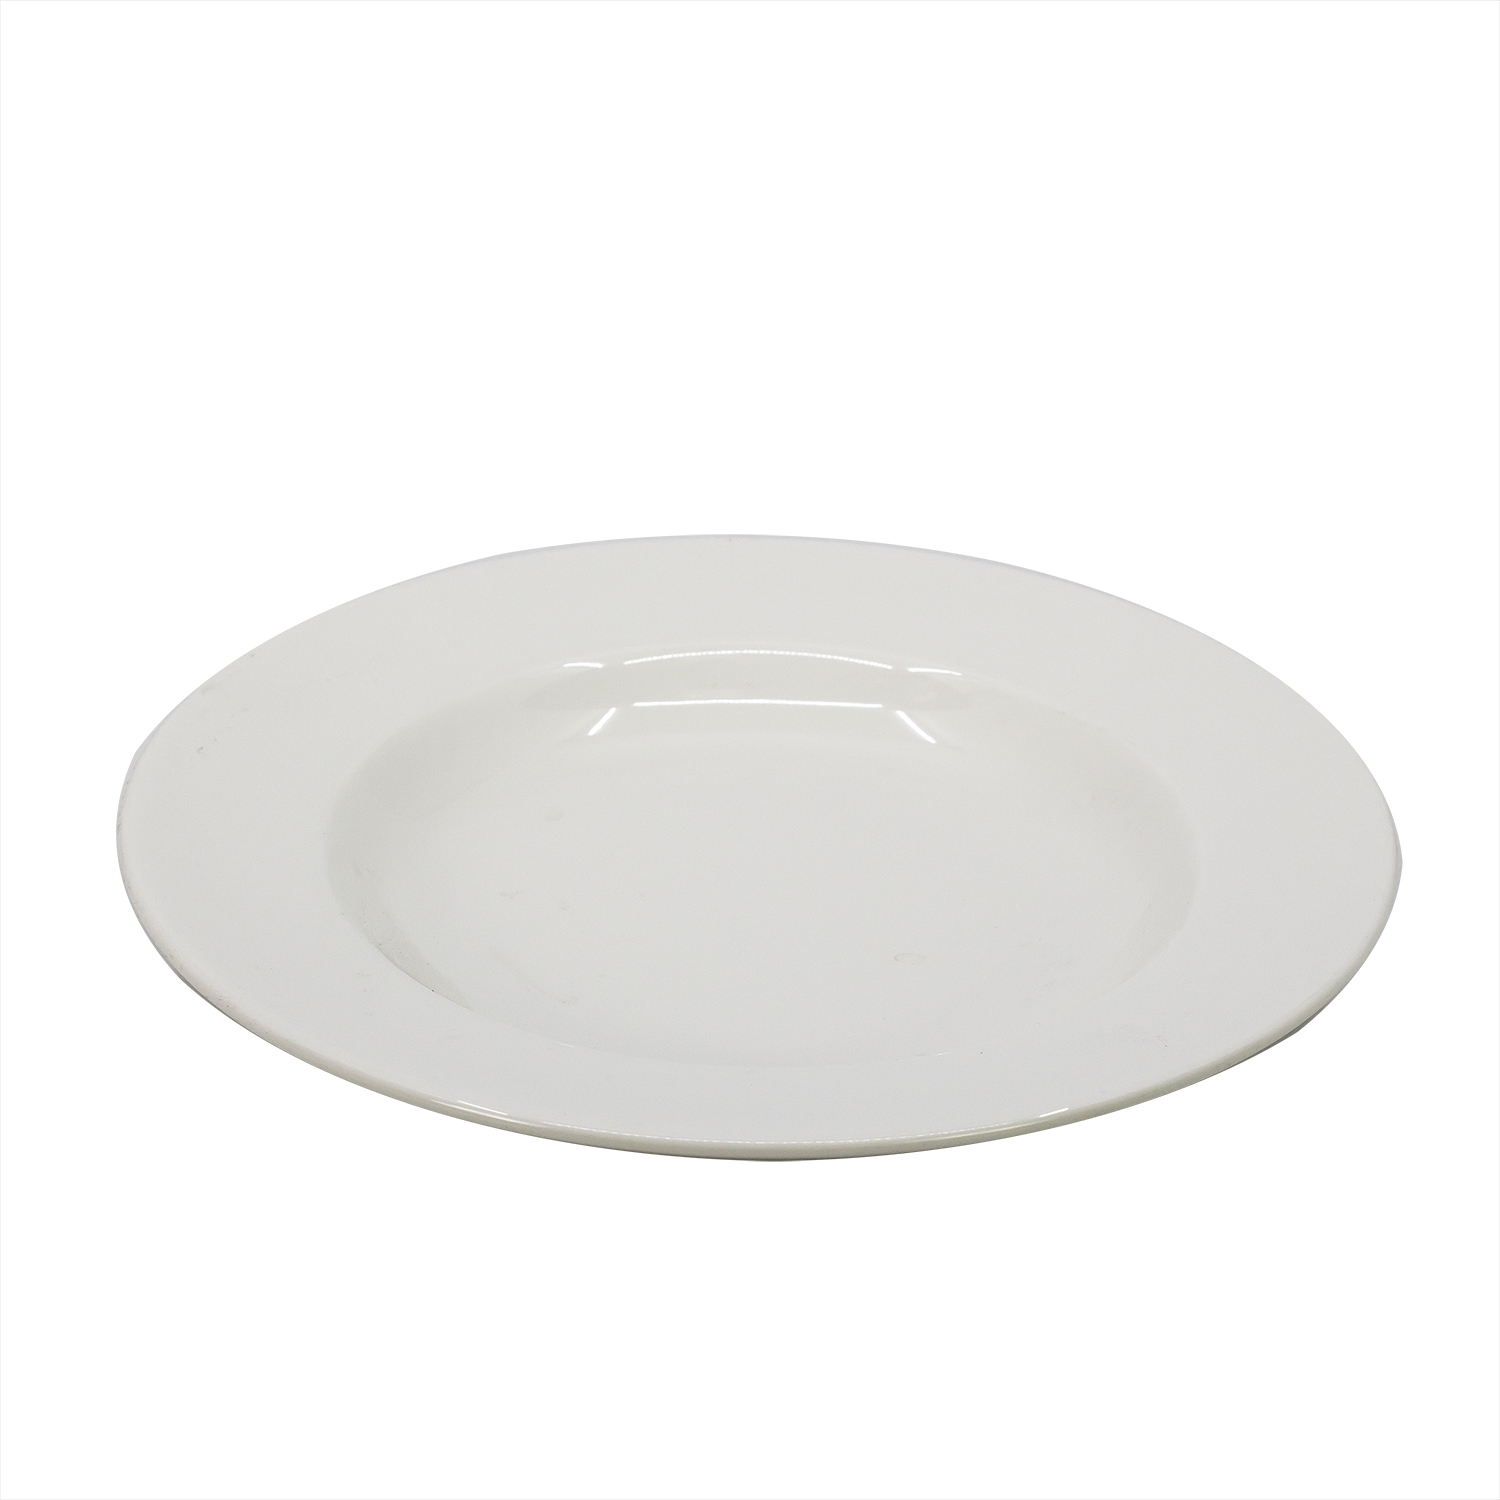 Тарелка глубокая RAK Porcelain Banquet 23 см (94033)